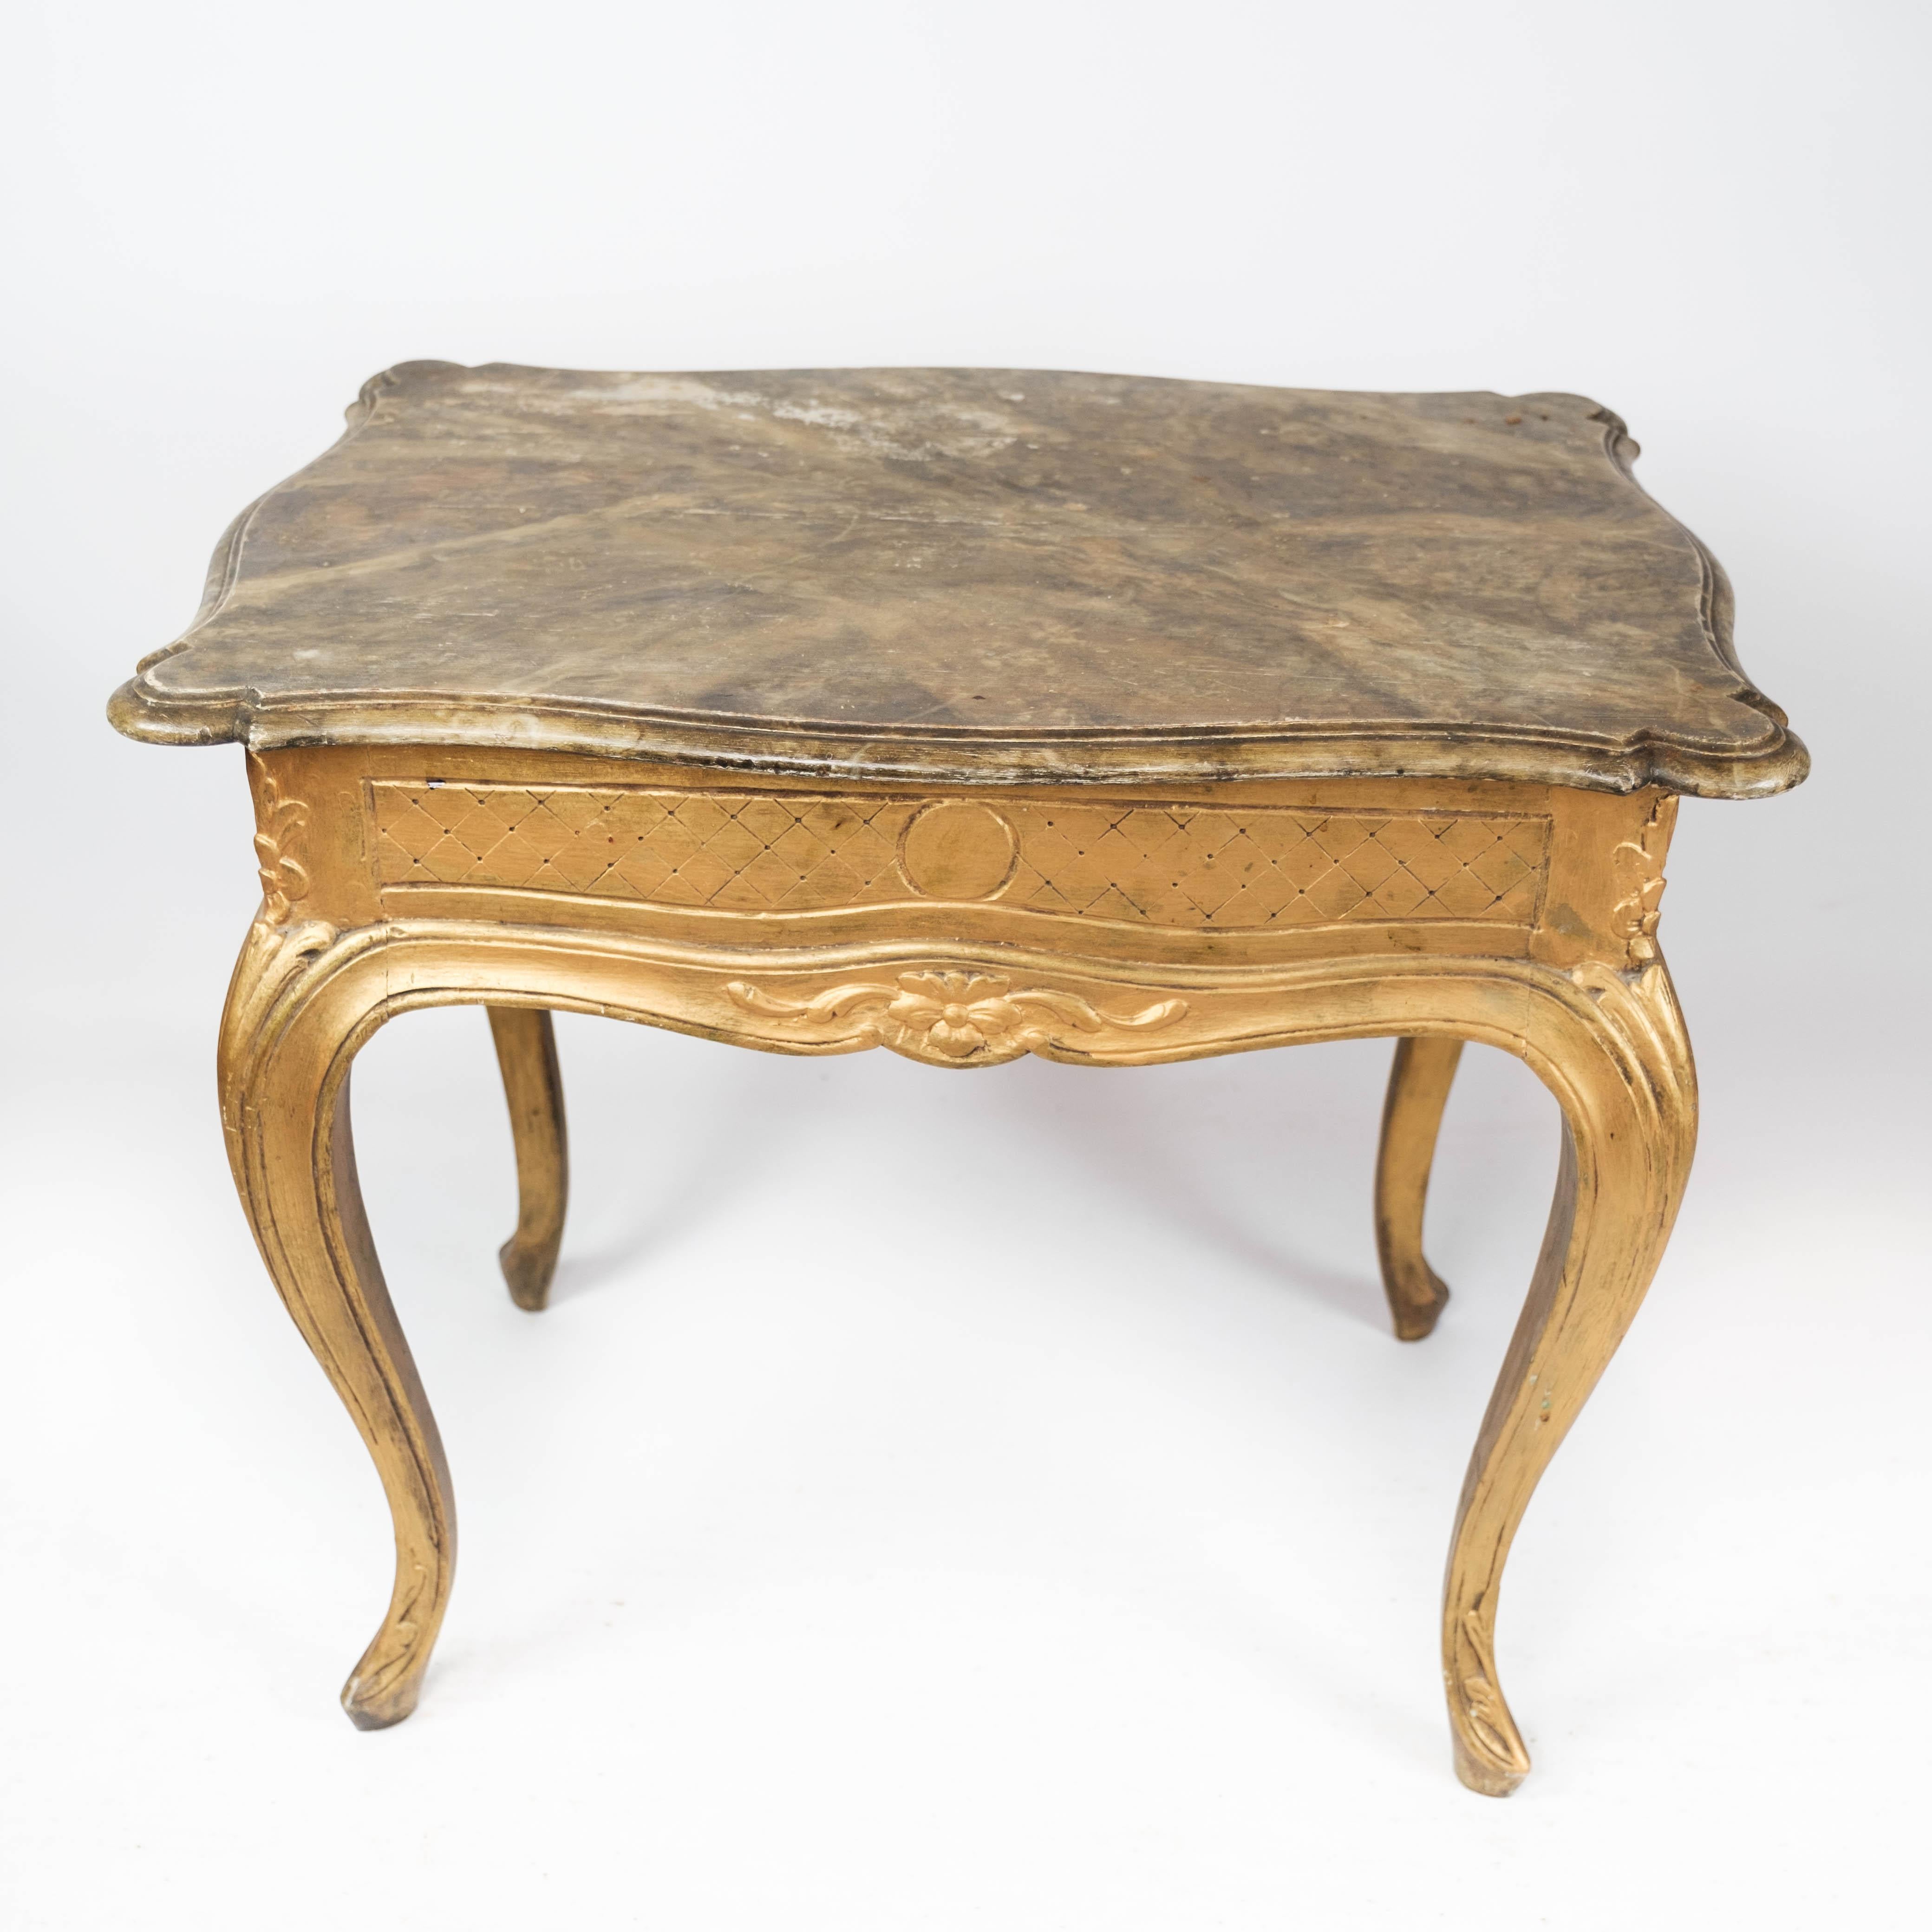 Table d'appoint néo-rococo avec plateau marbré et cadre en bois doré, en très bon état, datant des années 1860.